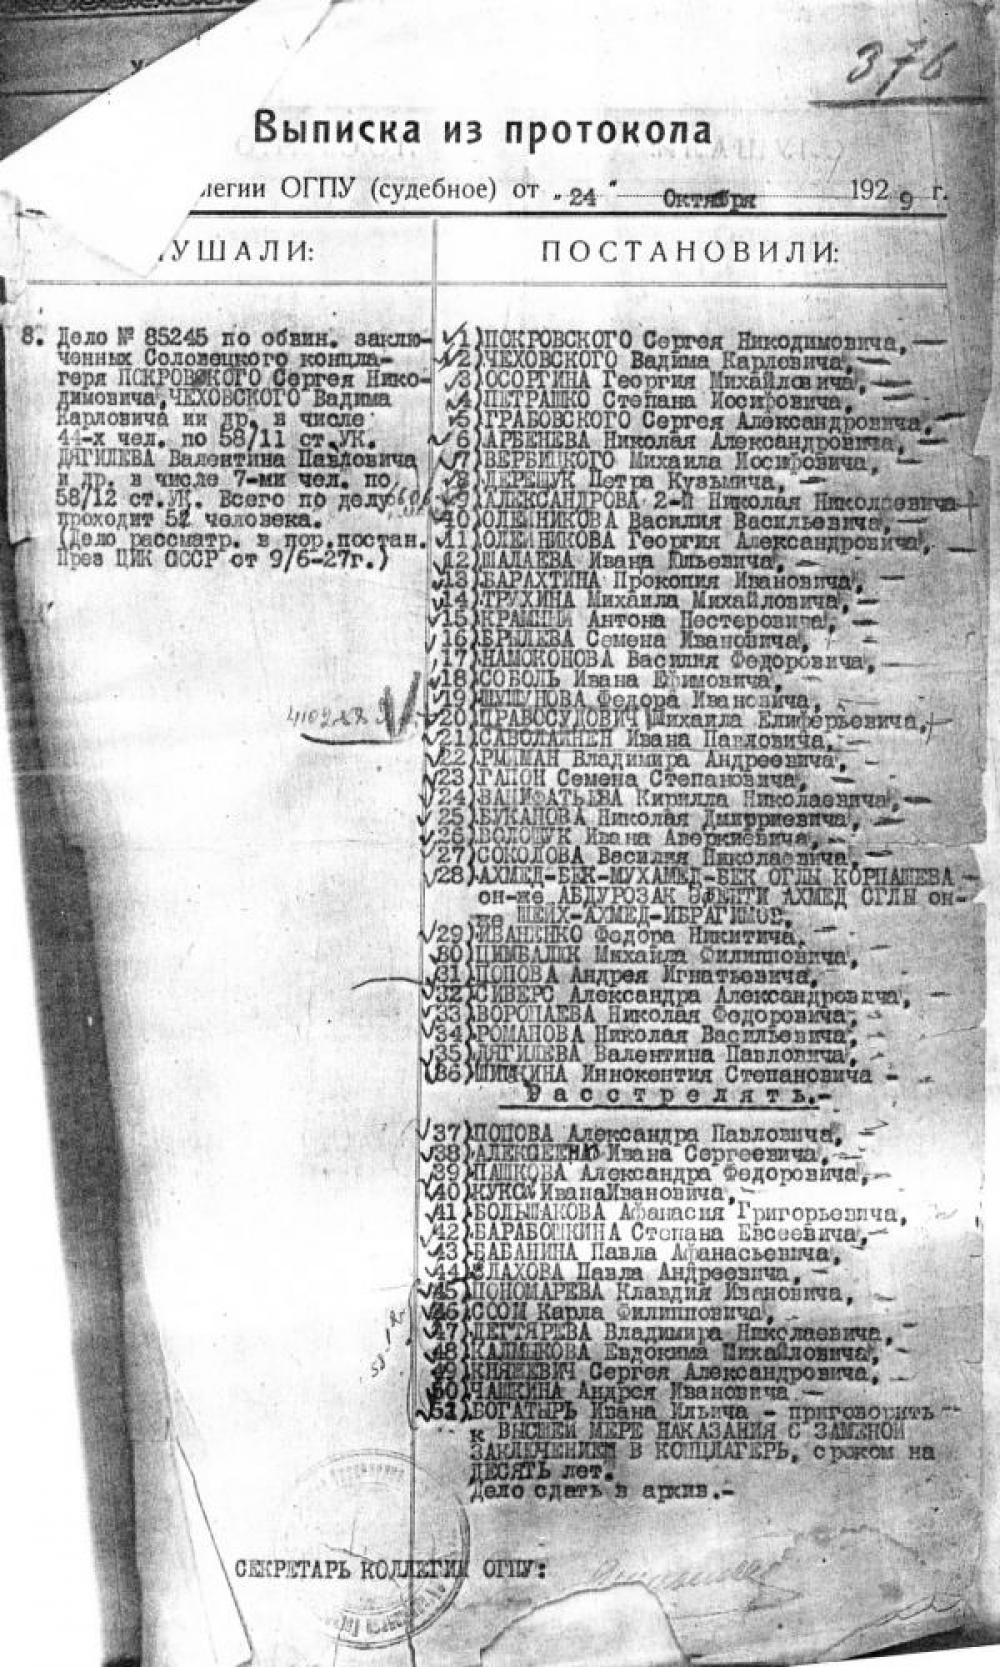 Обвинительное заключение по делу о «Кремлевском заговоре». 1929 г. Архив РУ ФСБ РФ по Архангельской области